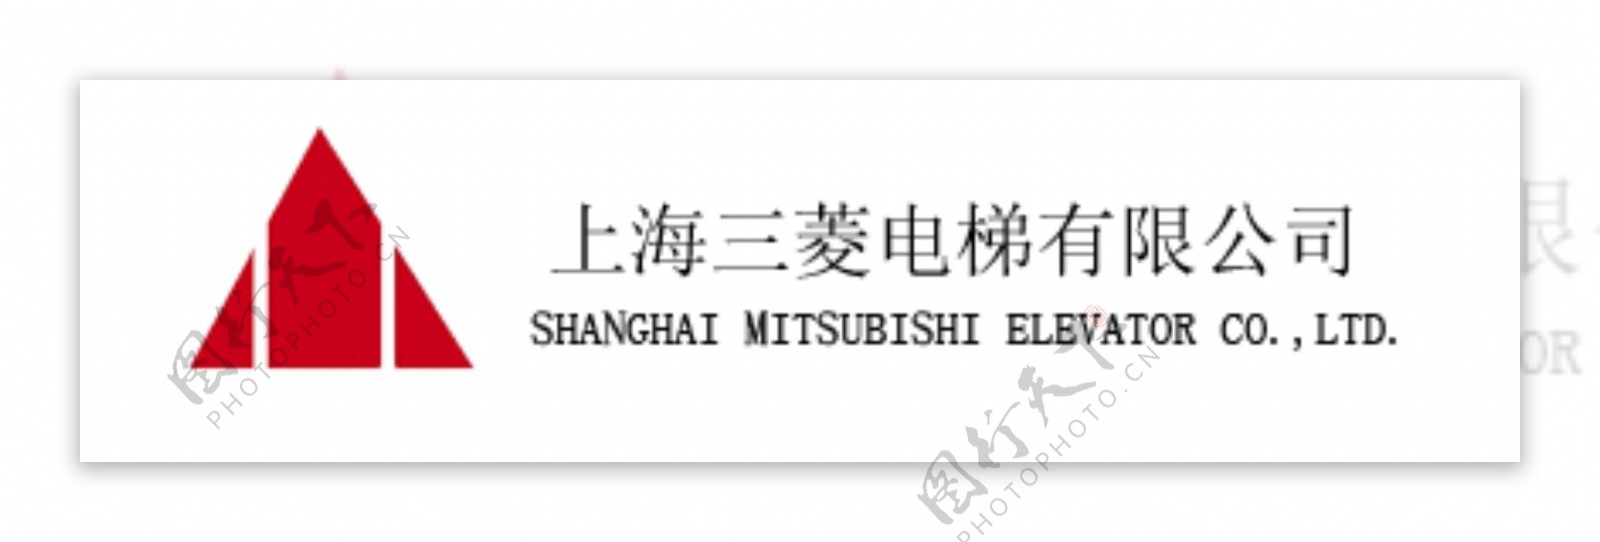 上海三菱电梯logo